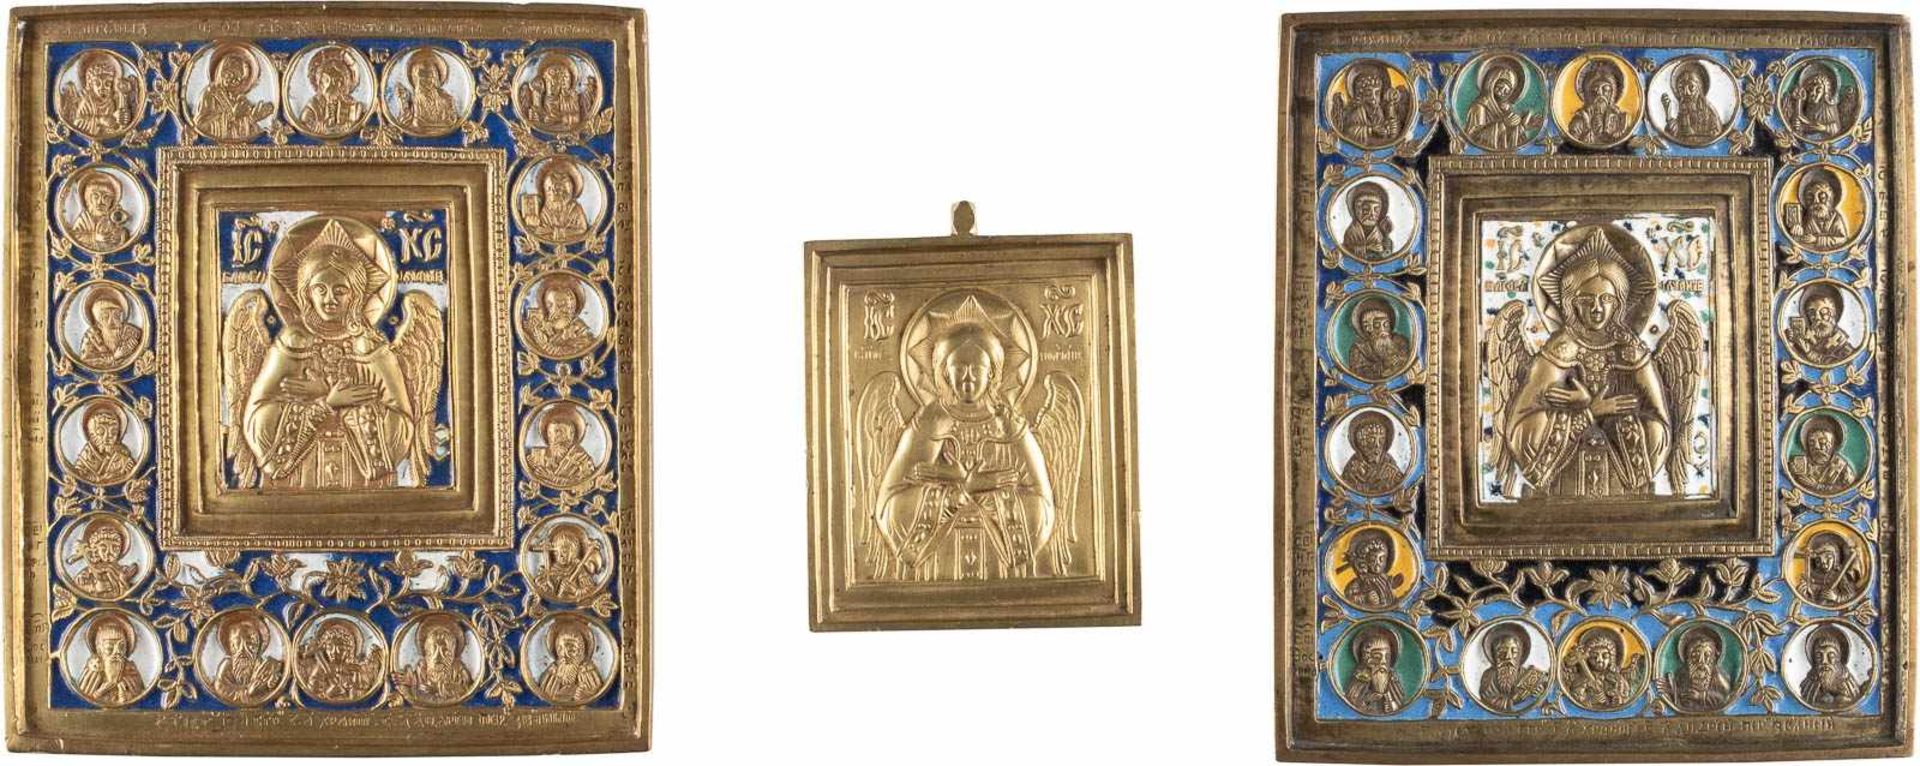 DREI IKONEN MIT CHRISTUS 'DAS GÜTIGE SCHWEIGEN' Russland, 19. Jh. Bronze, reliefiert gegossen, teils